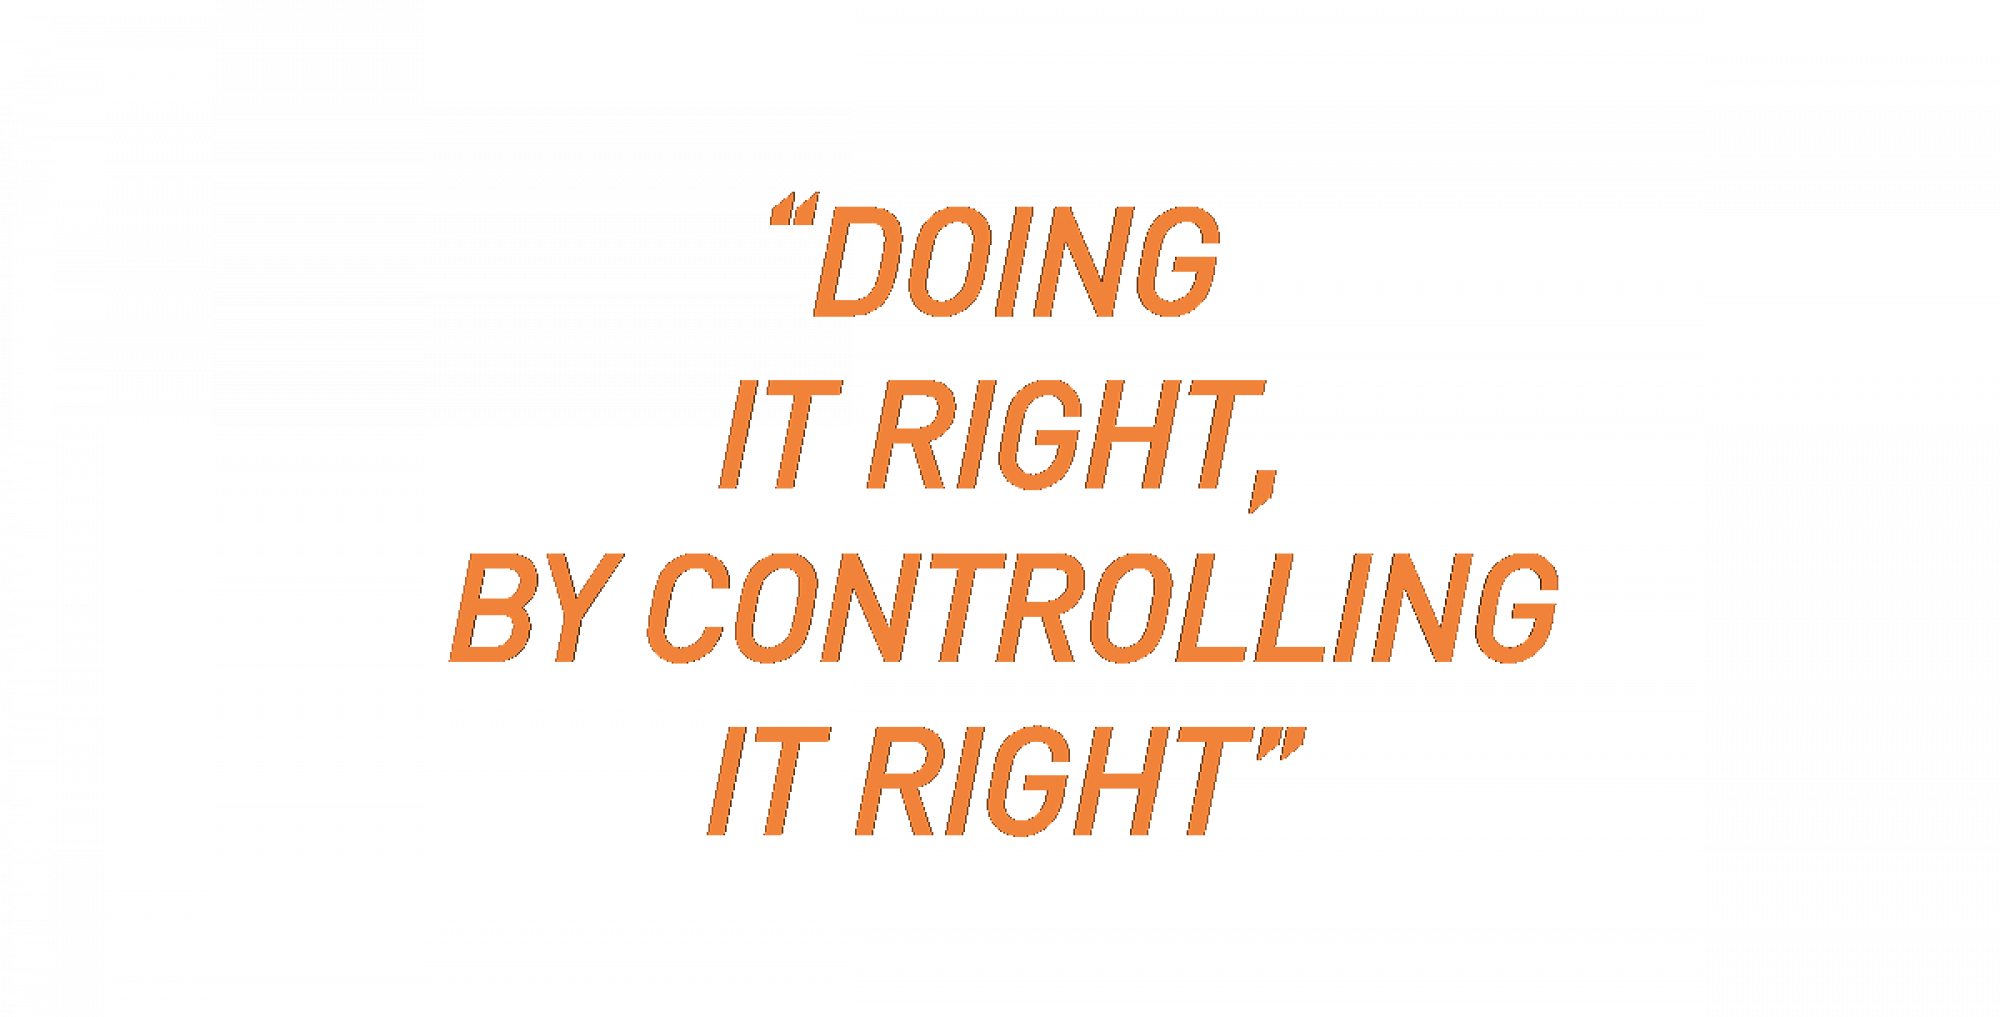 Doing-it-right-tekst-oranje.png